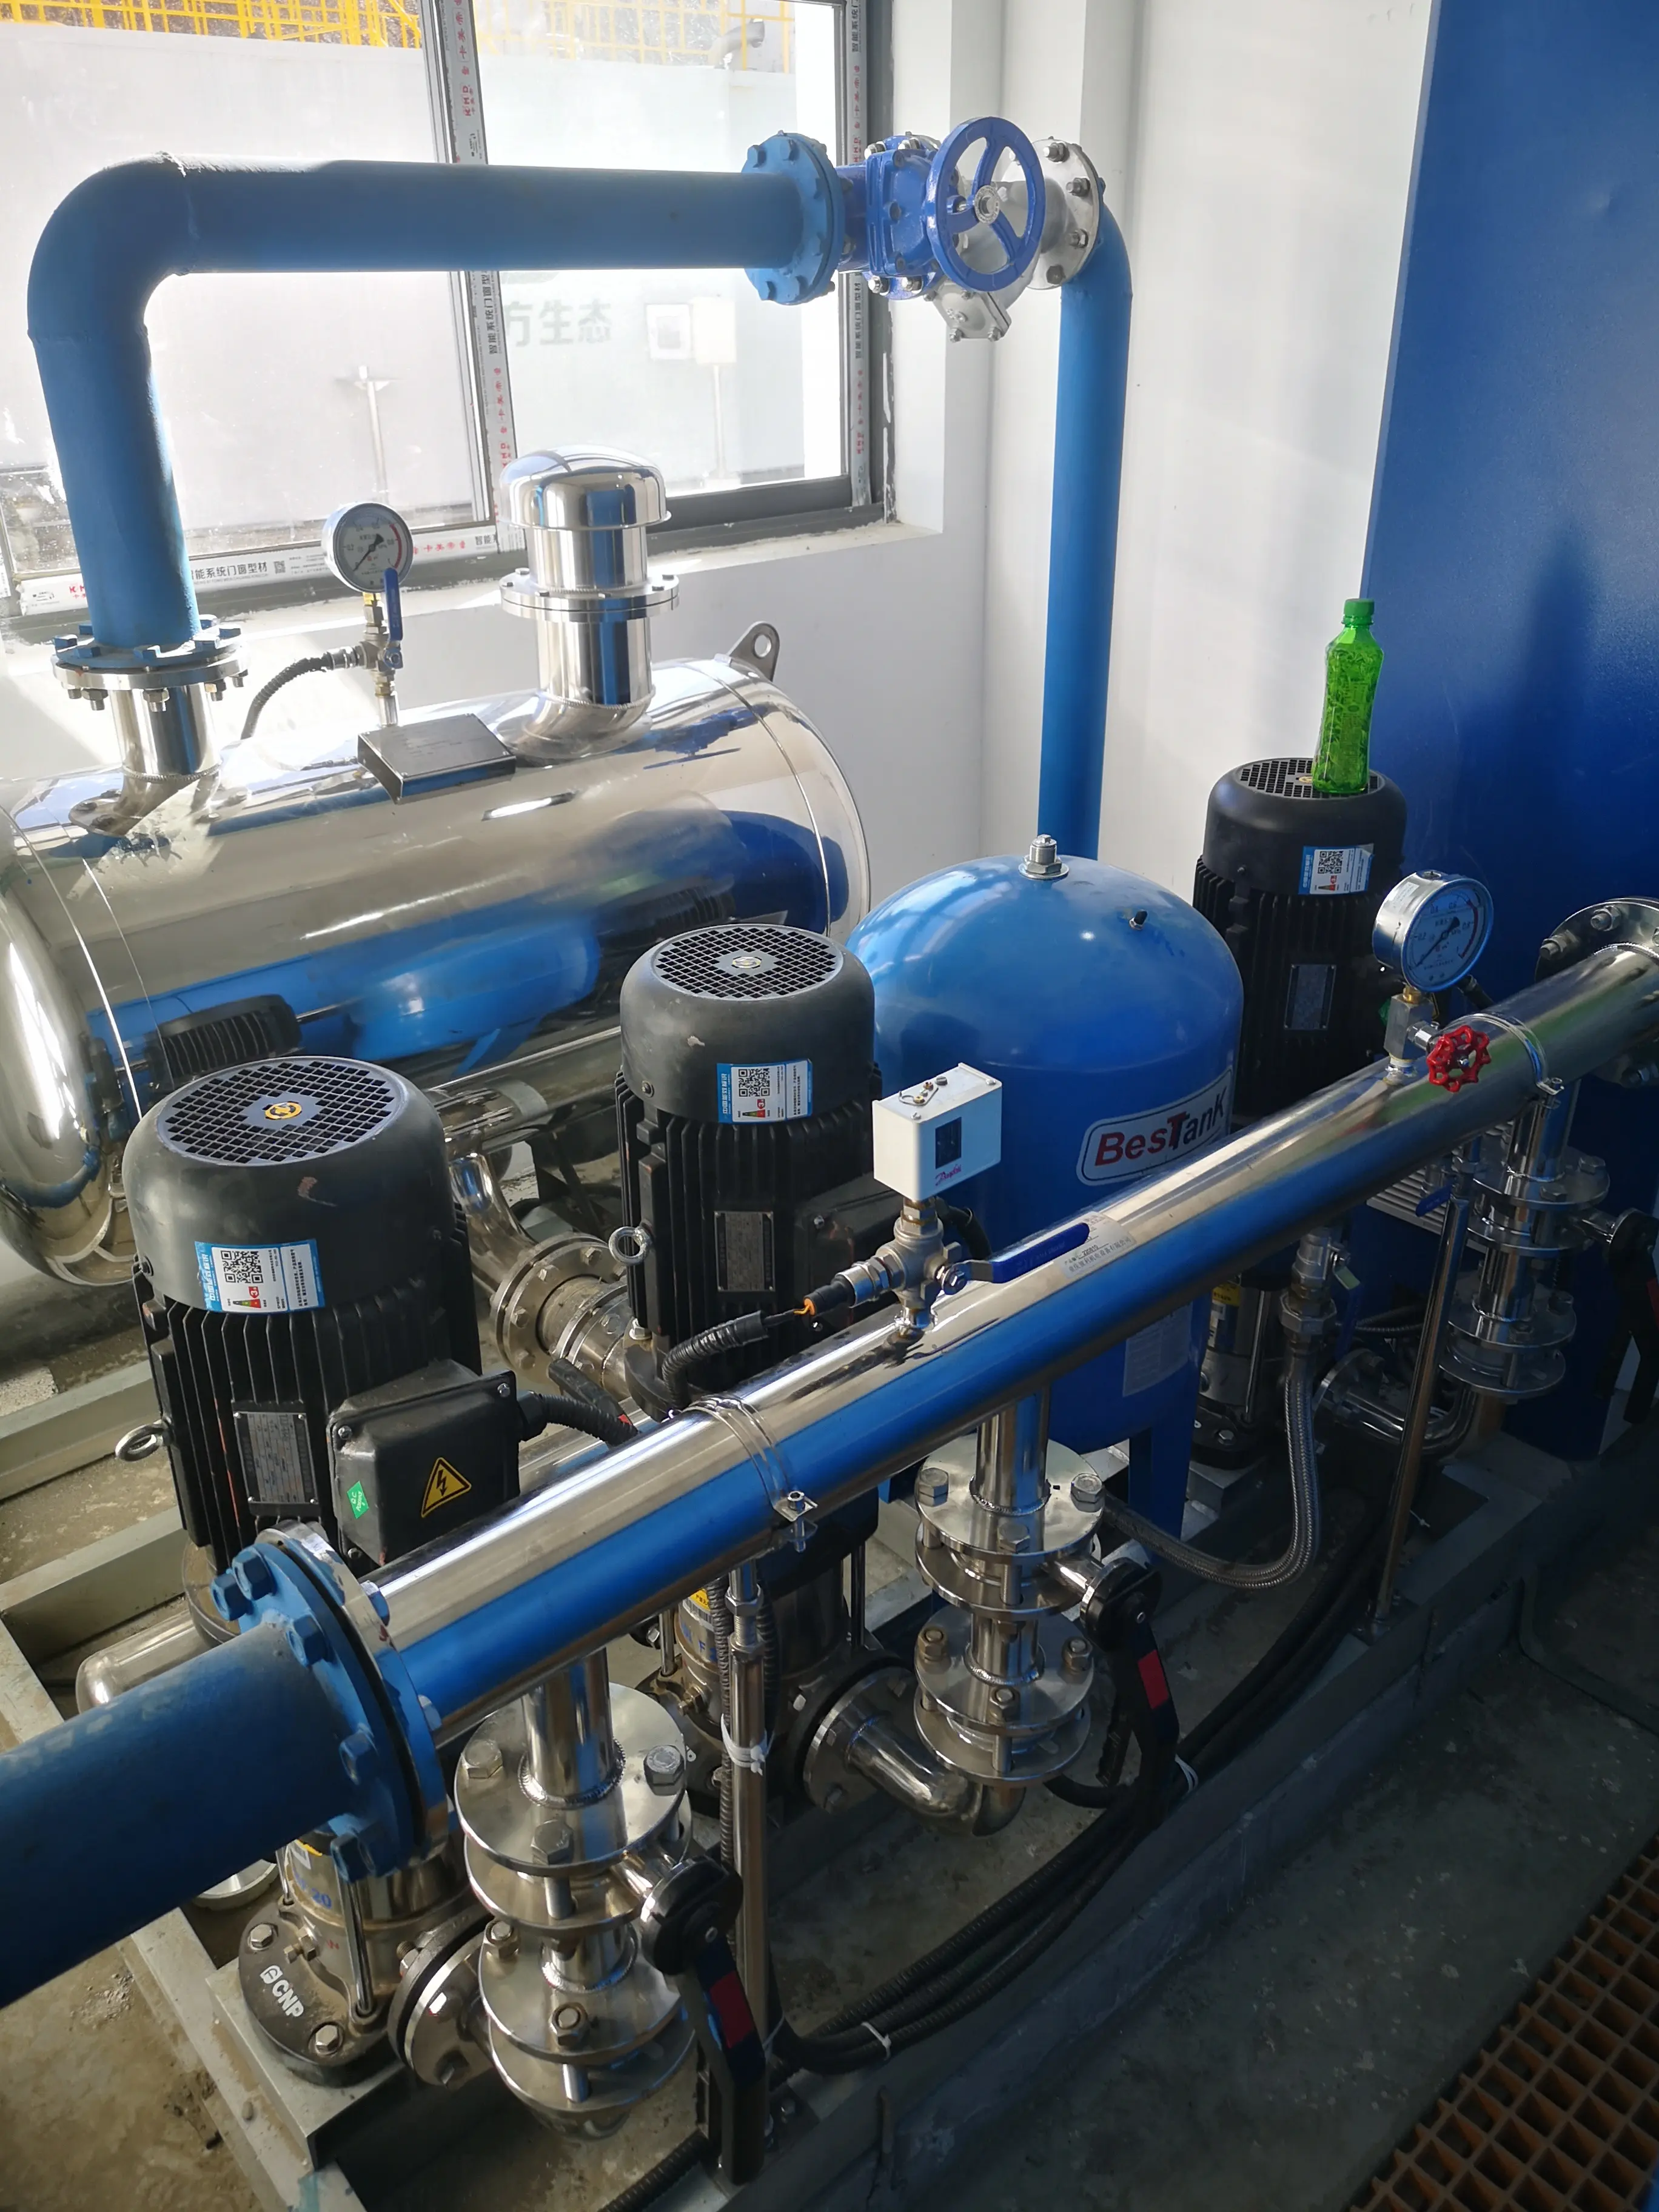 نظام جديد صناعي للاستخدام المنزلي لمصانع معالجة مياه الصرف الصحي MBR نظام لتجميع مياه الصرف الصحي مع عناصر PLC لمعالجة المياه الصرفية